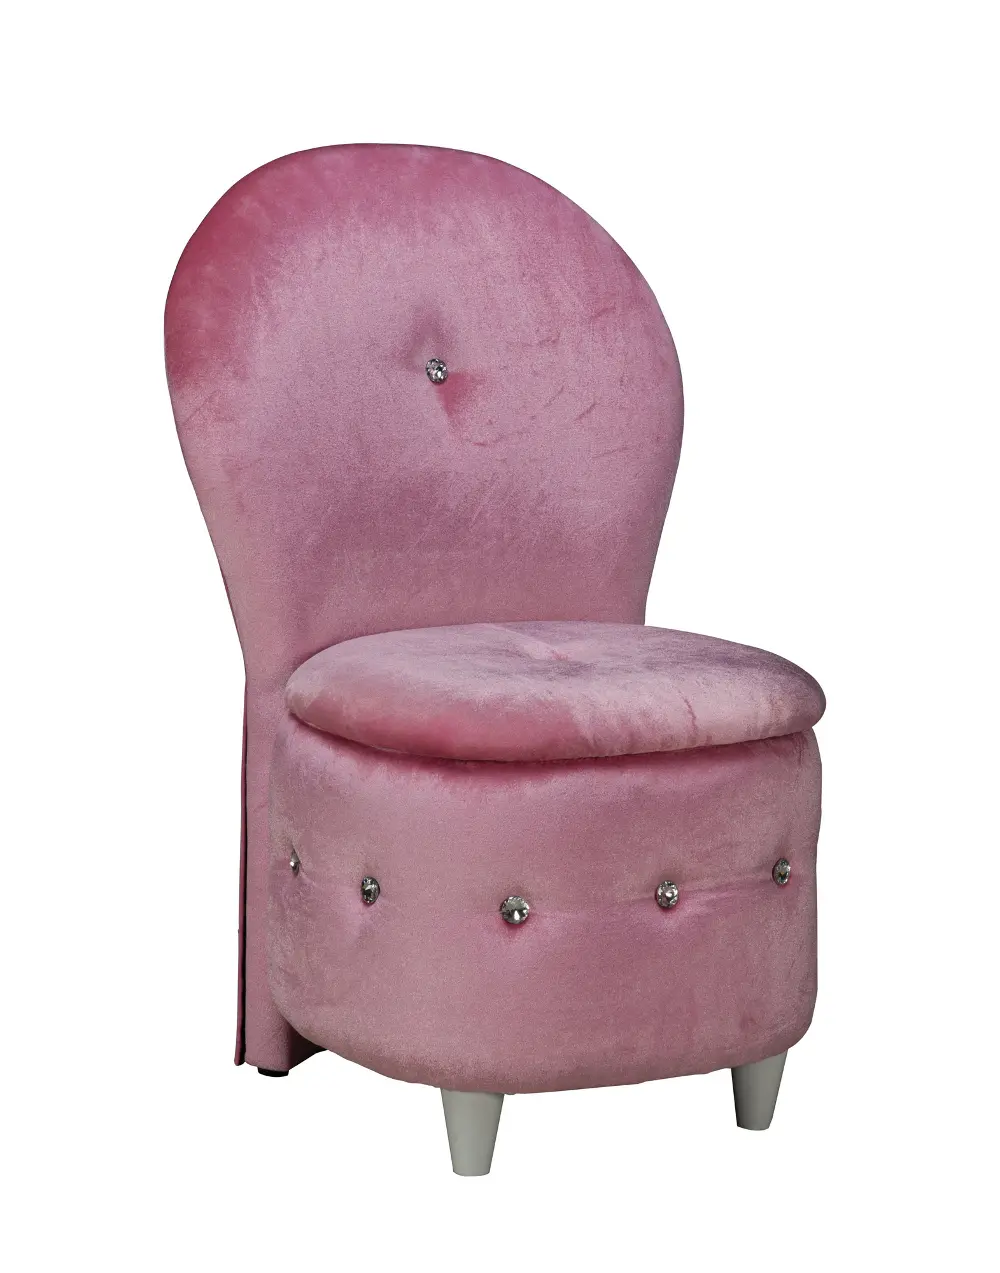 Parisian Pink Sit-n-Store Chair-1